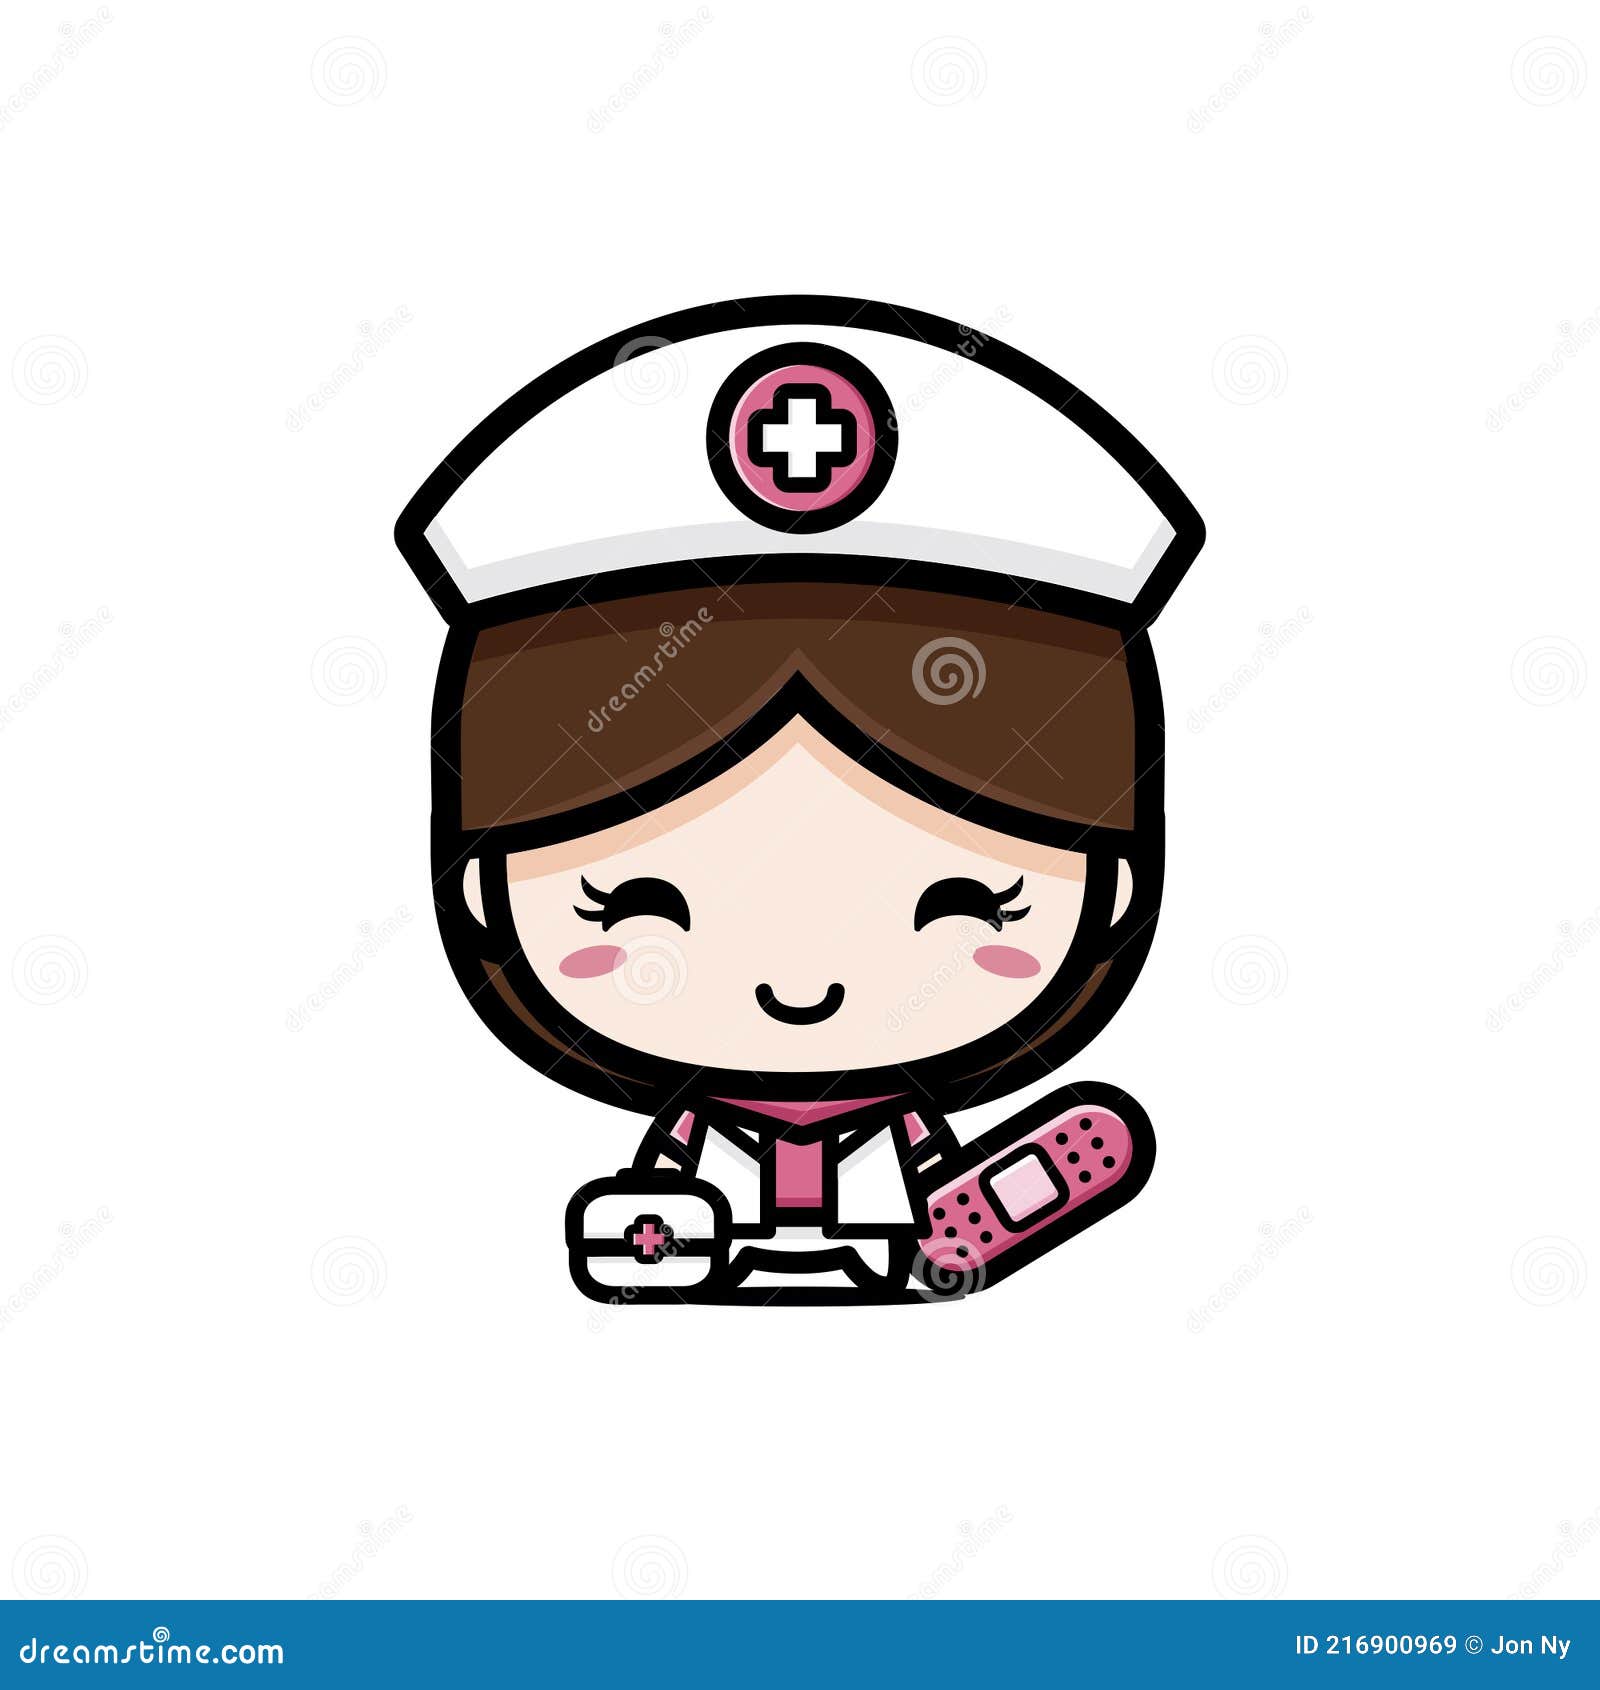 Fofo De Enfermeira Médica Personagem De Desenho Animado No Estilo